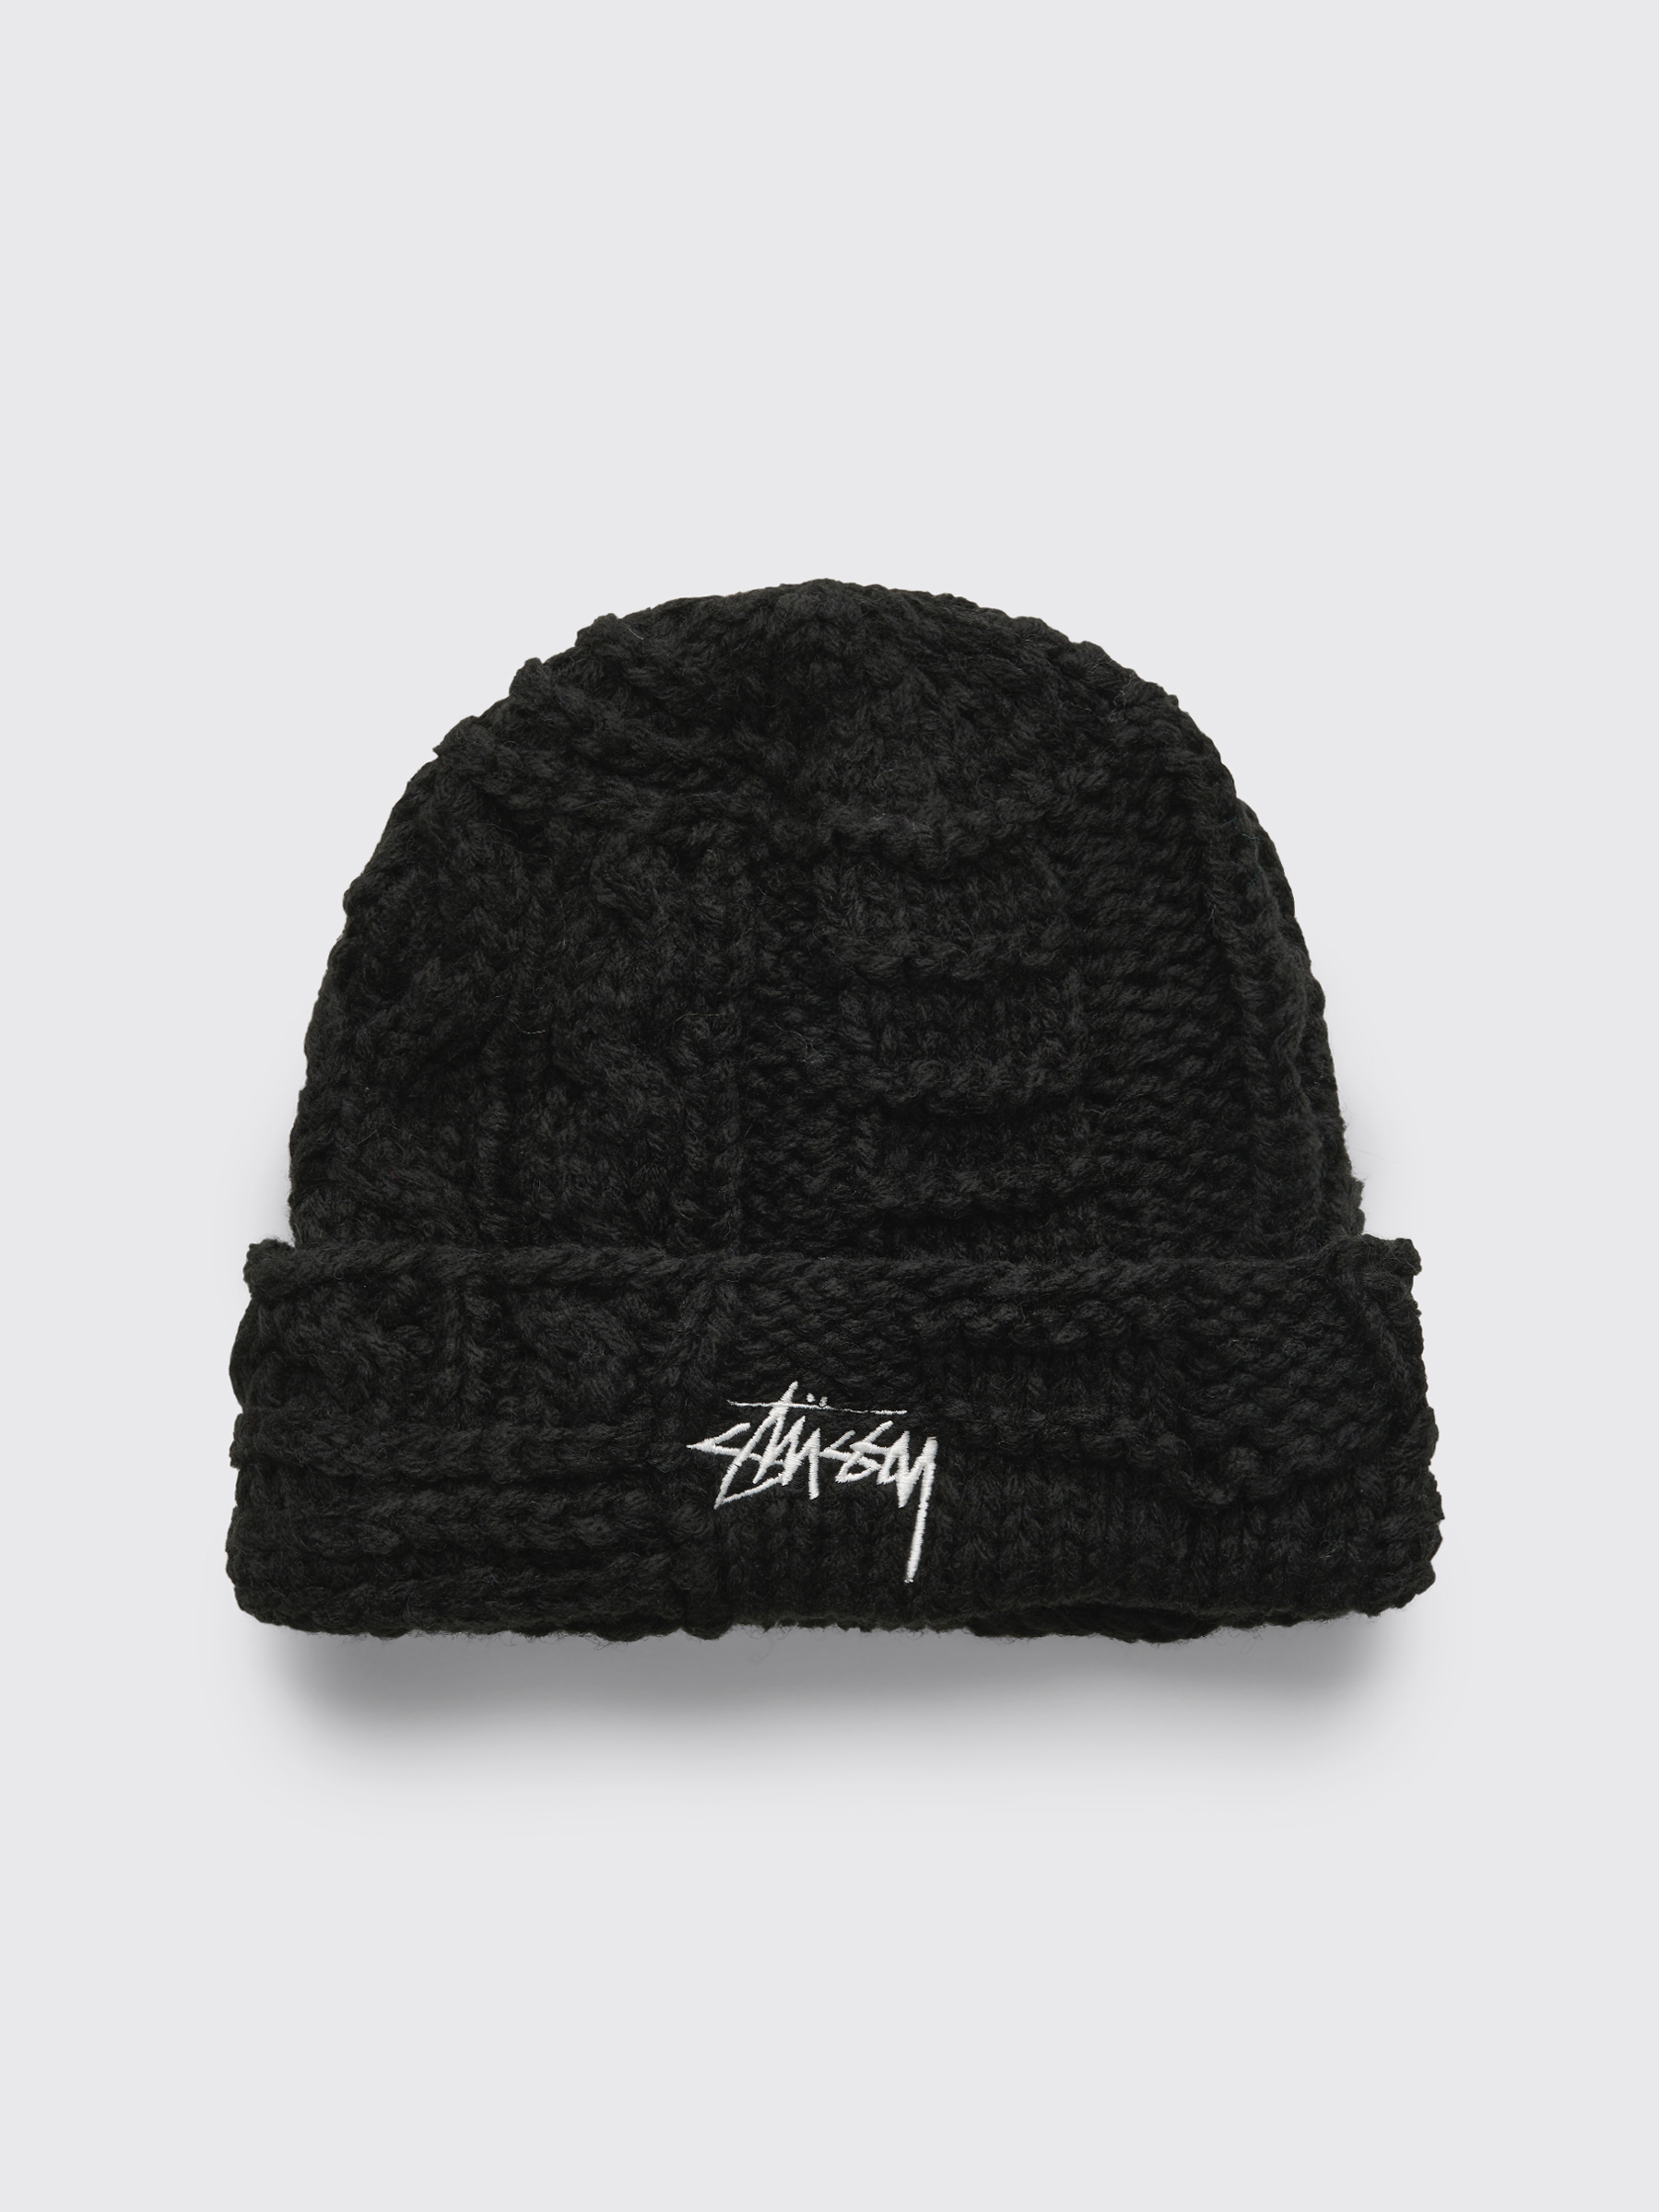 stussy knit hat | skisharp.com